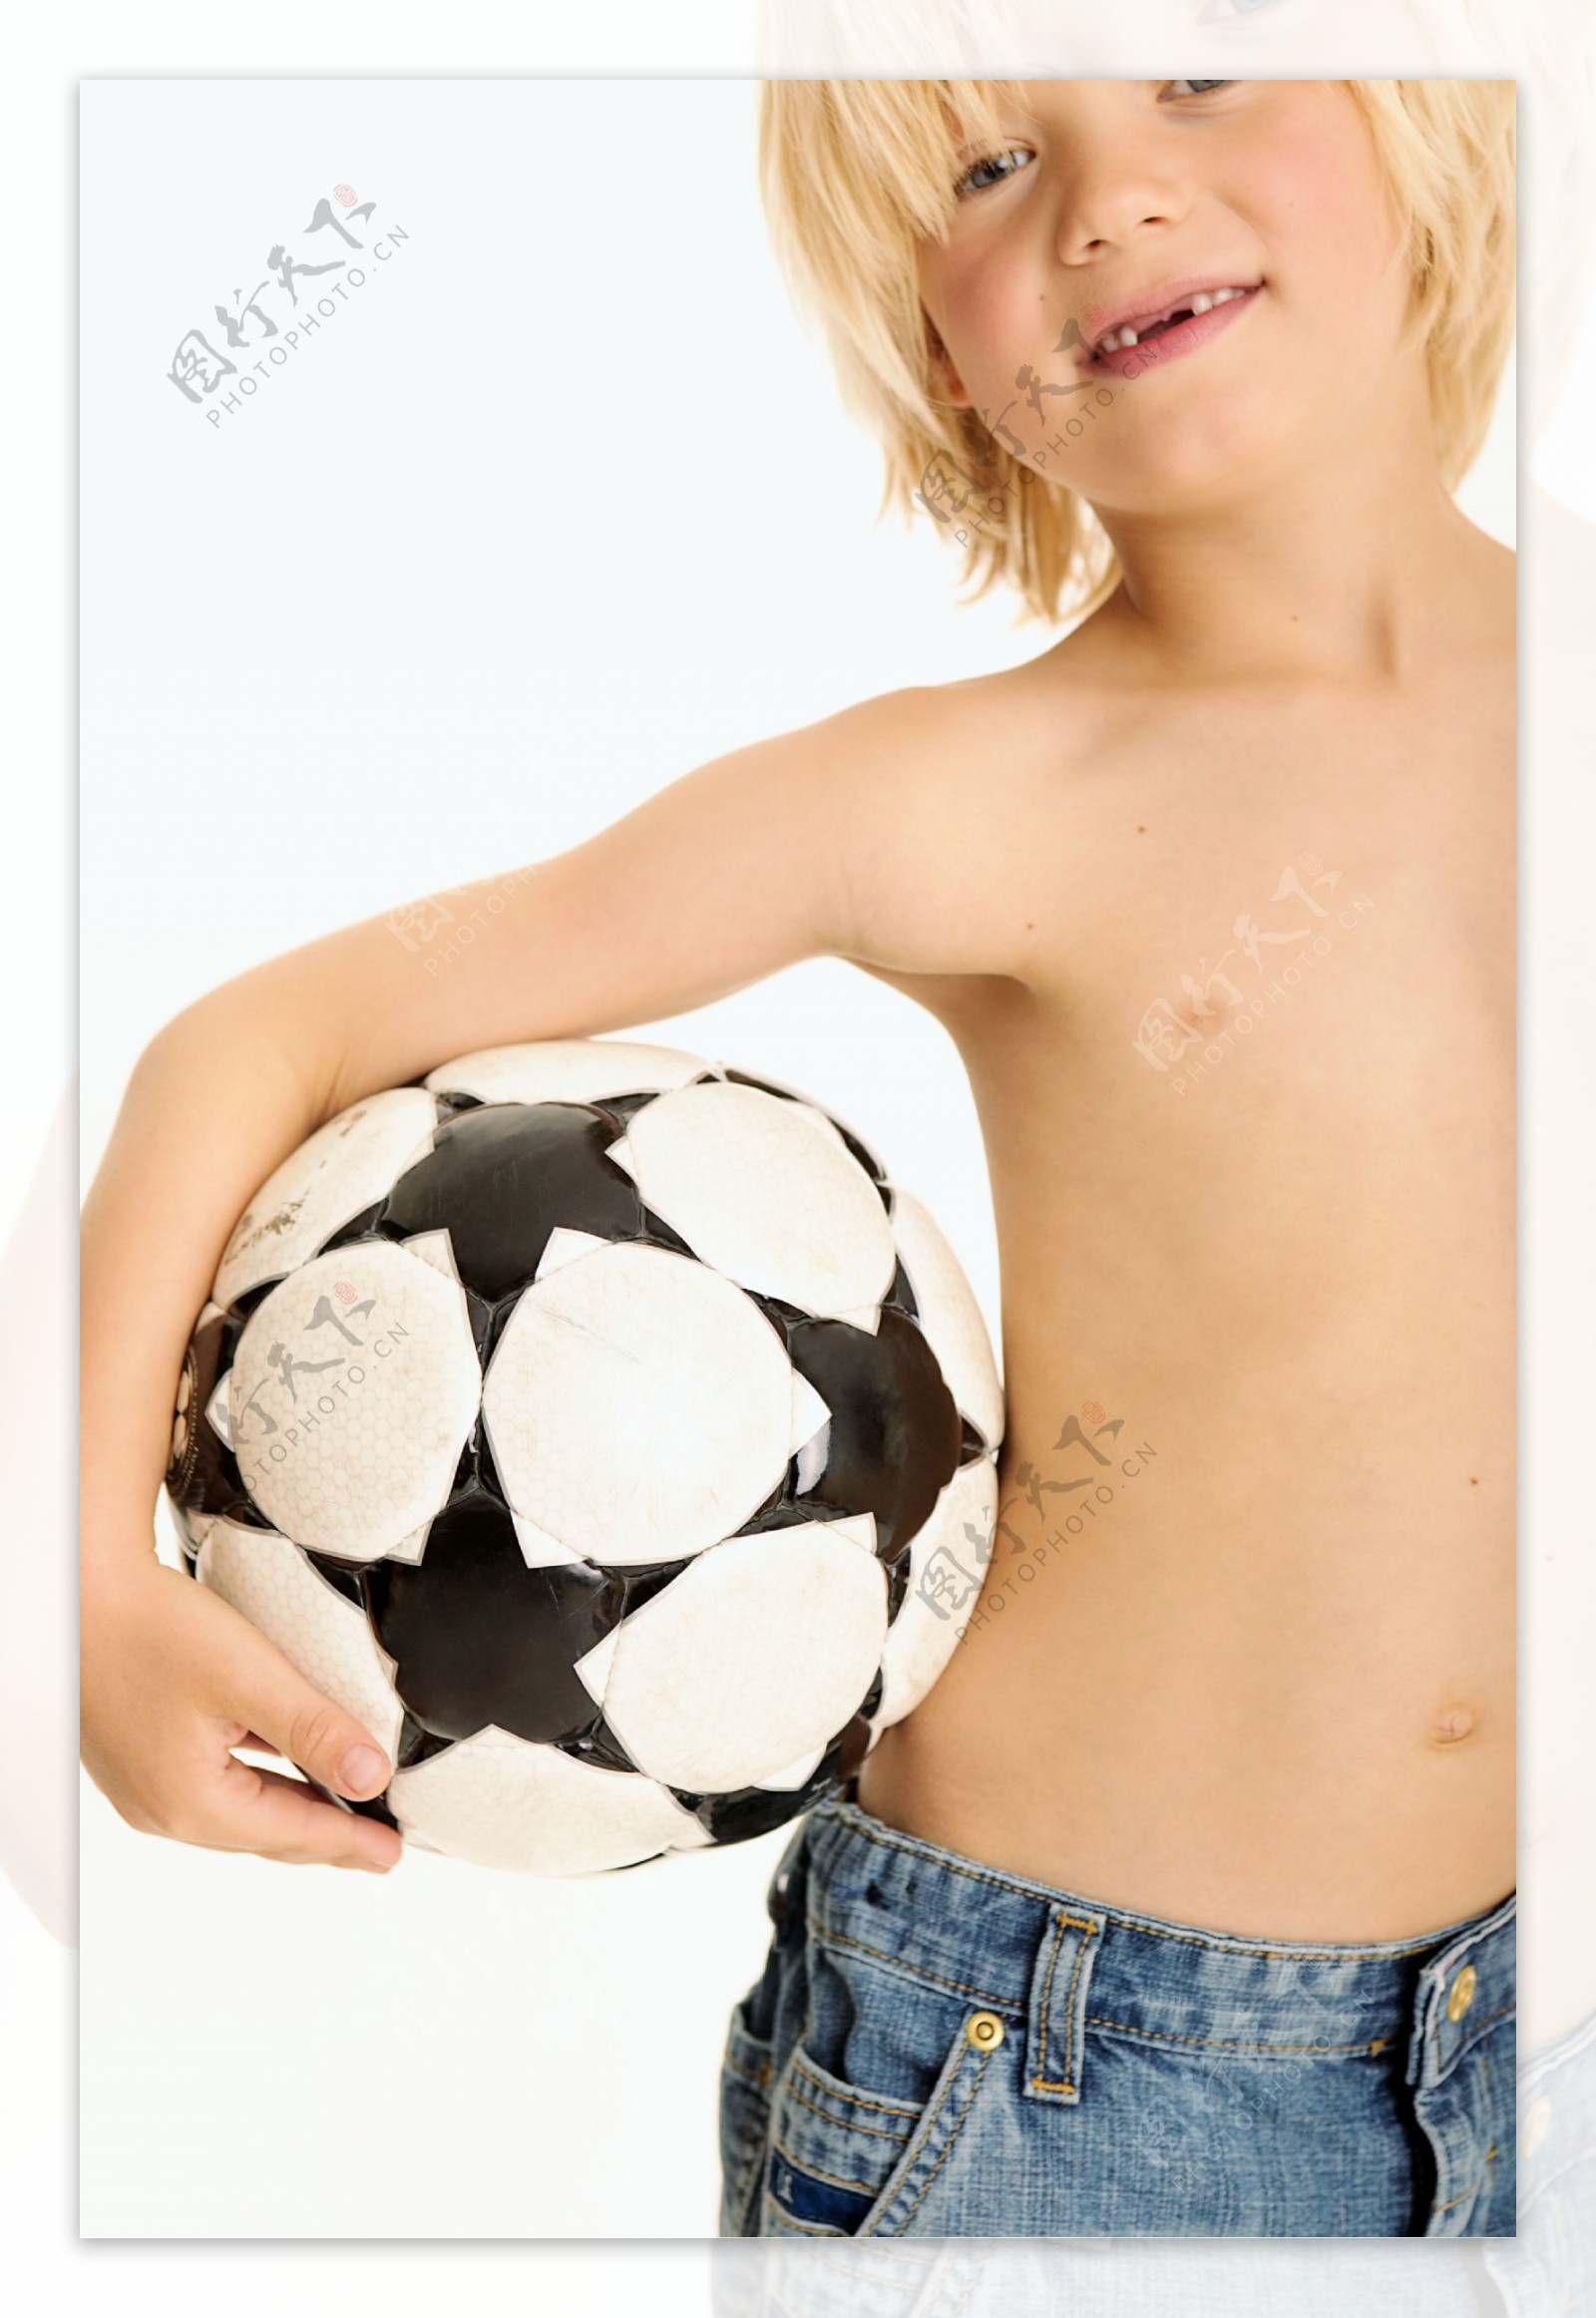 拿着足球的小男孩图片